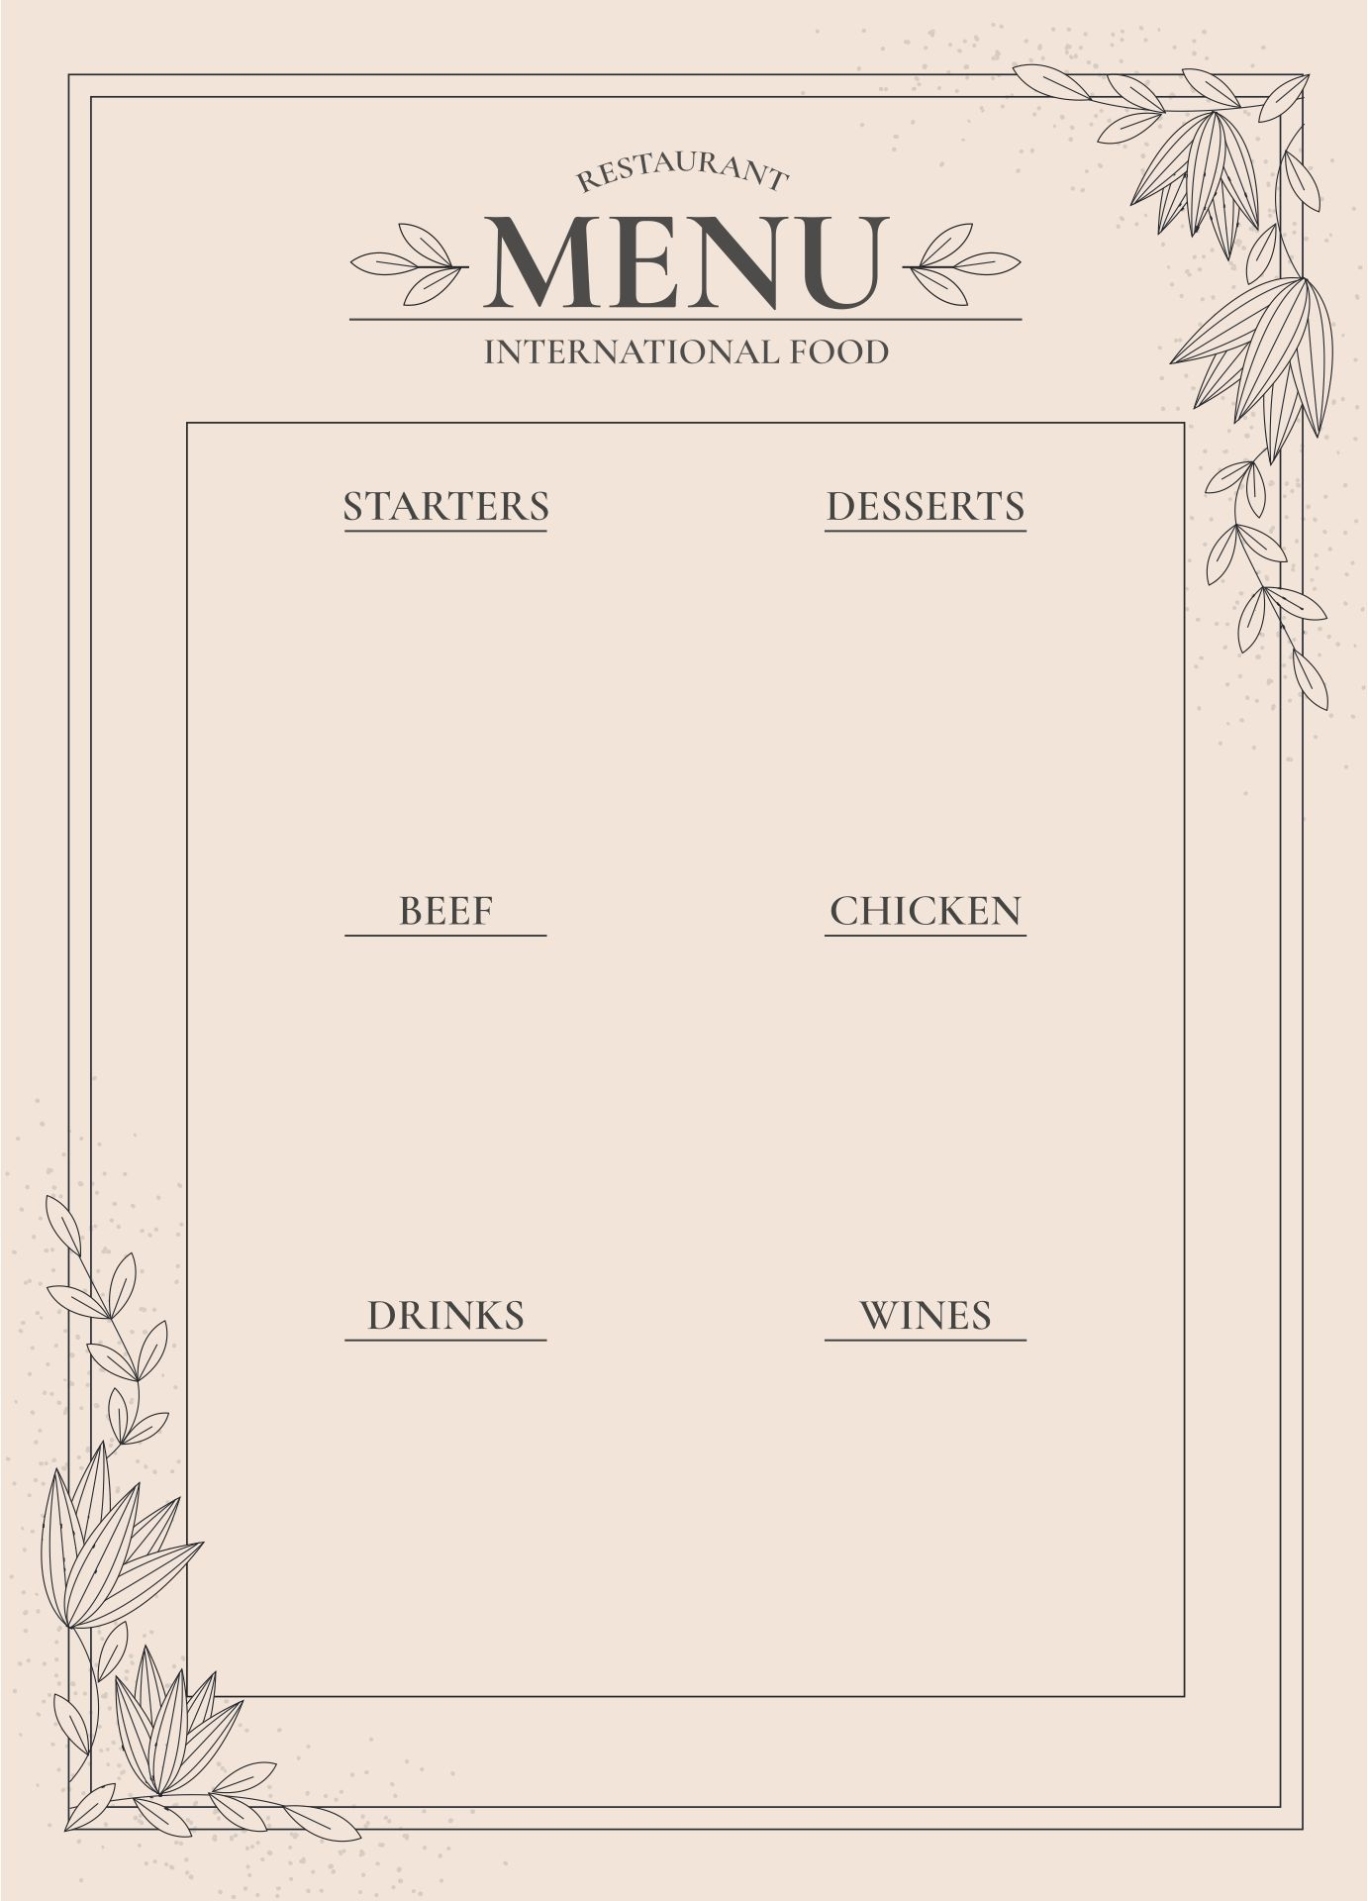 10 Best Printable Blank Restaurant Menus - Printablee In Free Restaurant Menu Templates For Word